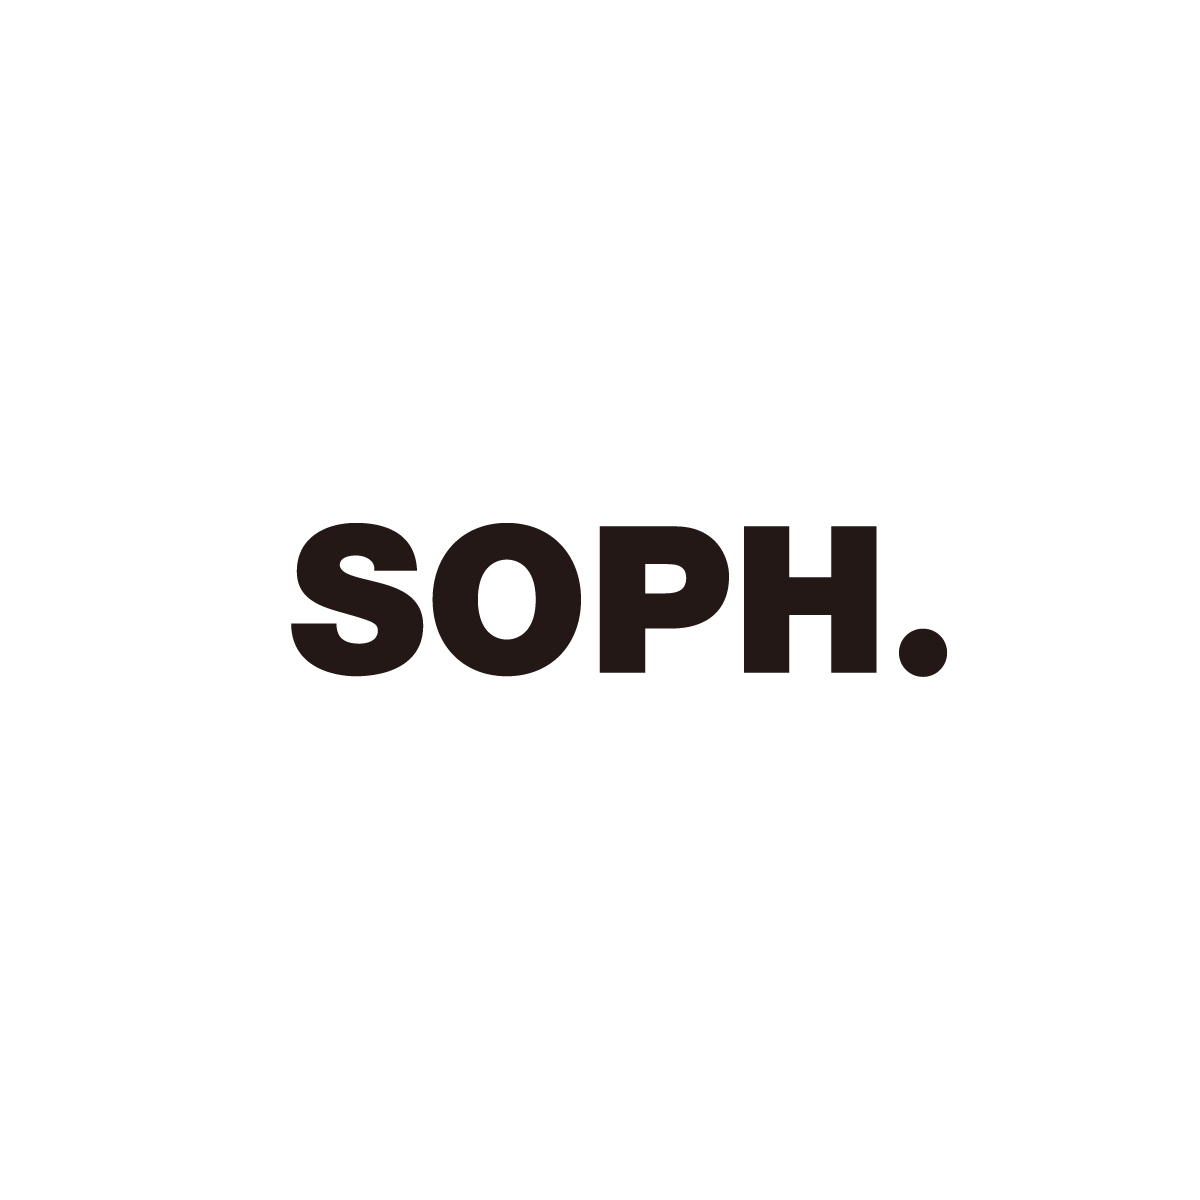 SOPH_s_01